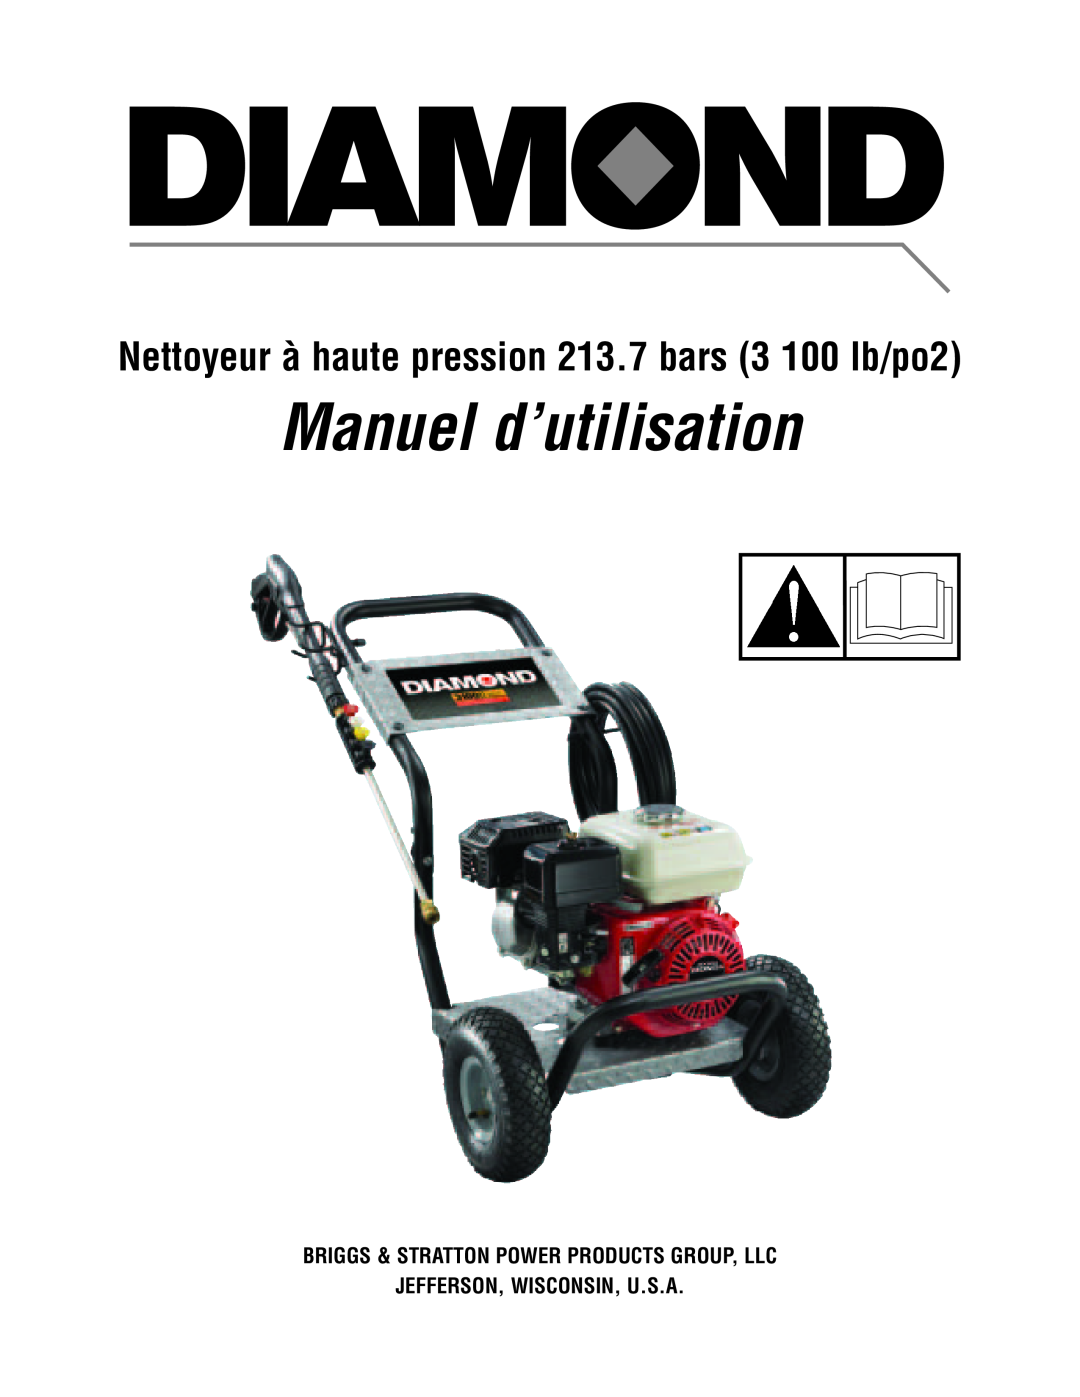 Diamond Power Products 3100 Psi manual Manuel d’utilisation, Nettoyeur à haute pression 213.7 bars 3 100 lb/po2 